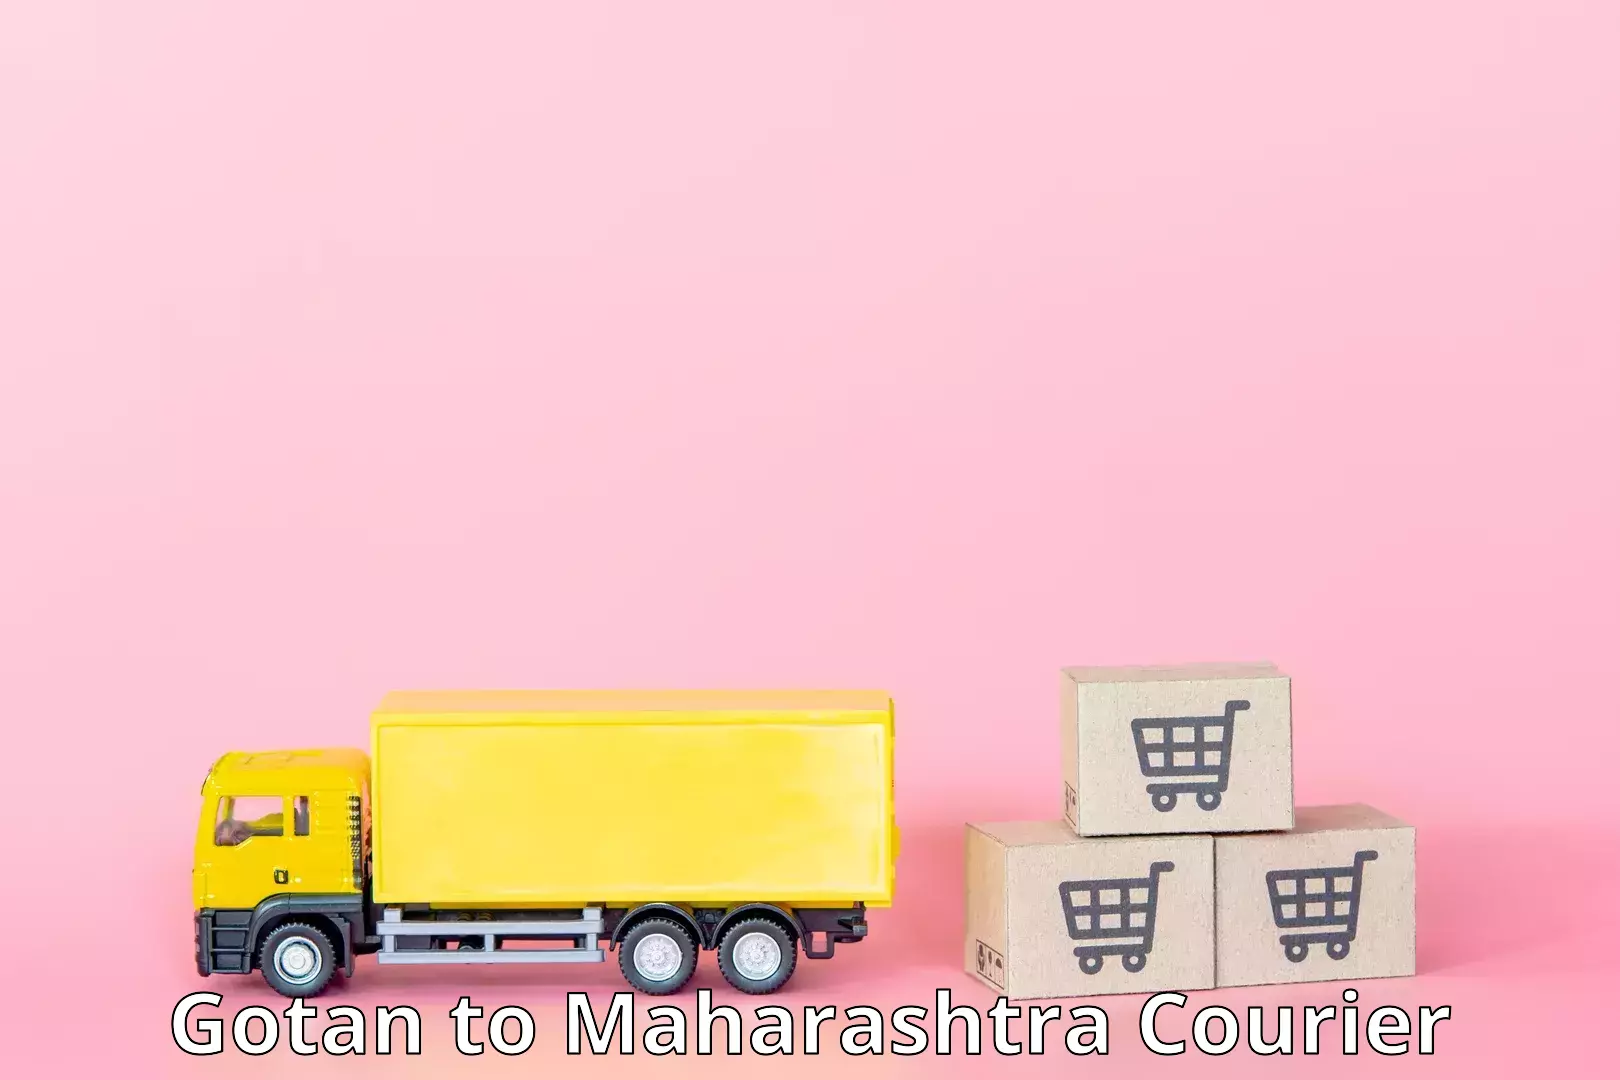 Nationwide courier service Gotan to Maharashtra